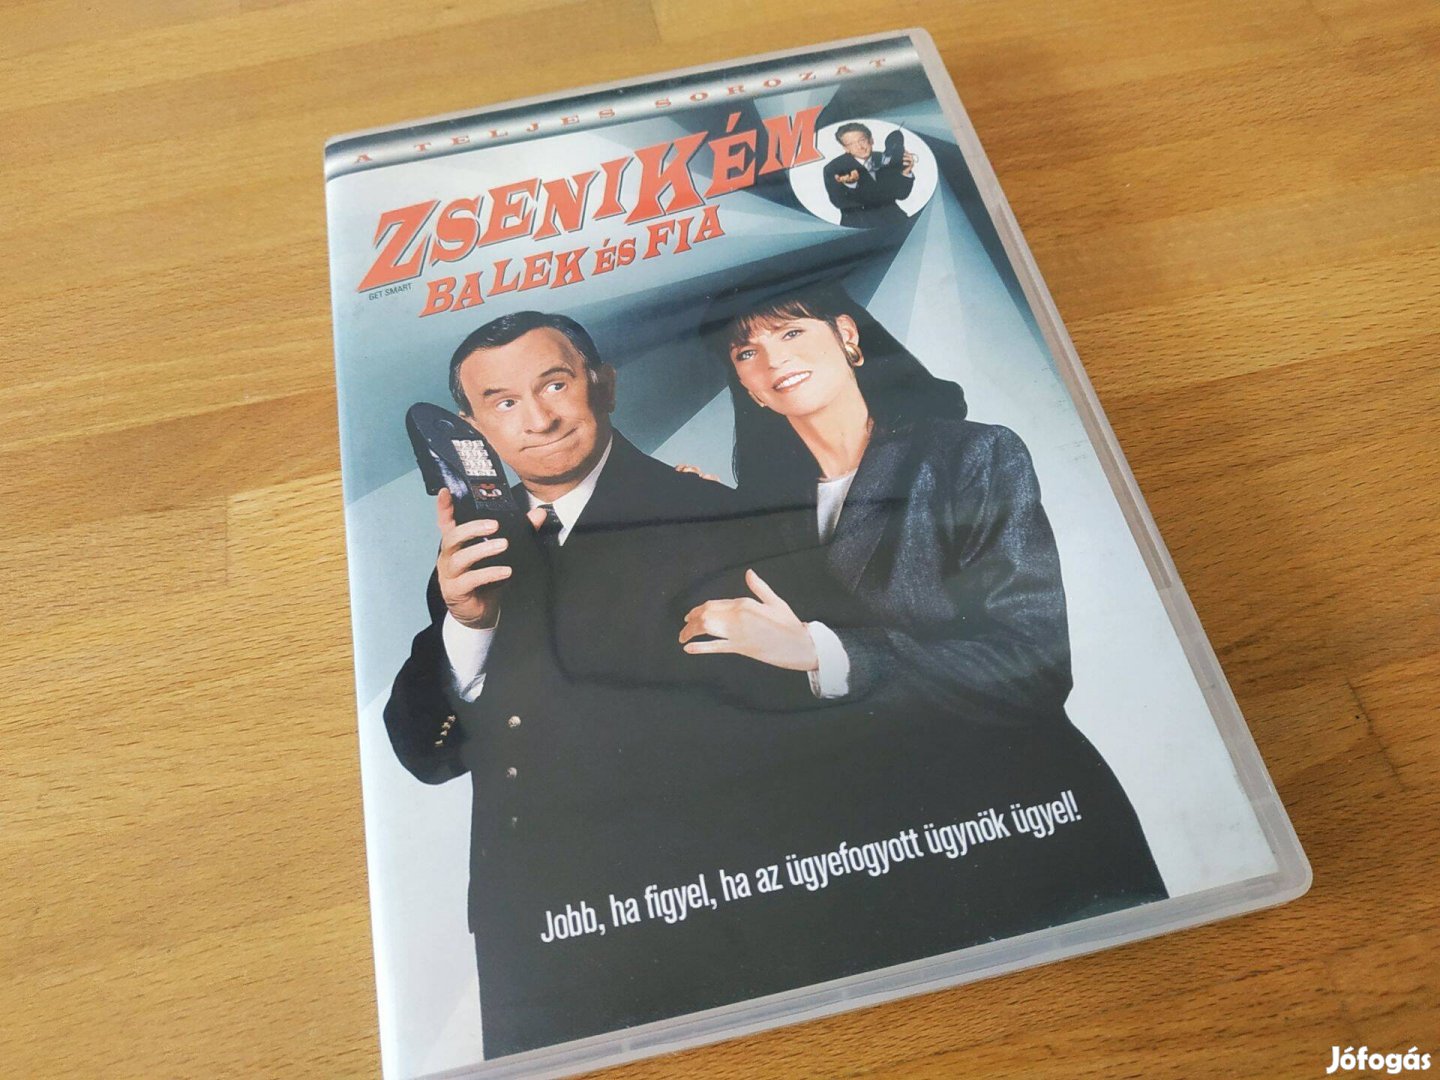 Zsenikém - Balek és fia - Get Smart (Forum Home, 2008, 153p, DVD)